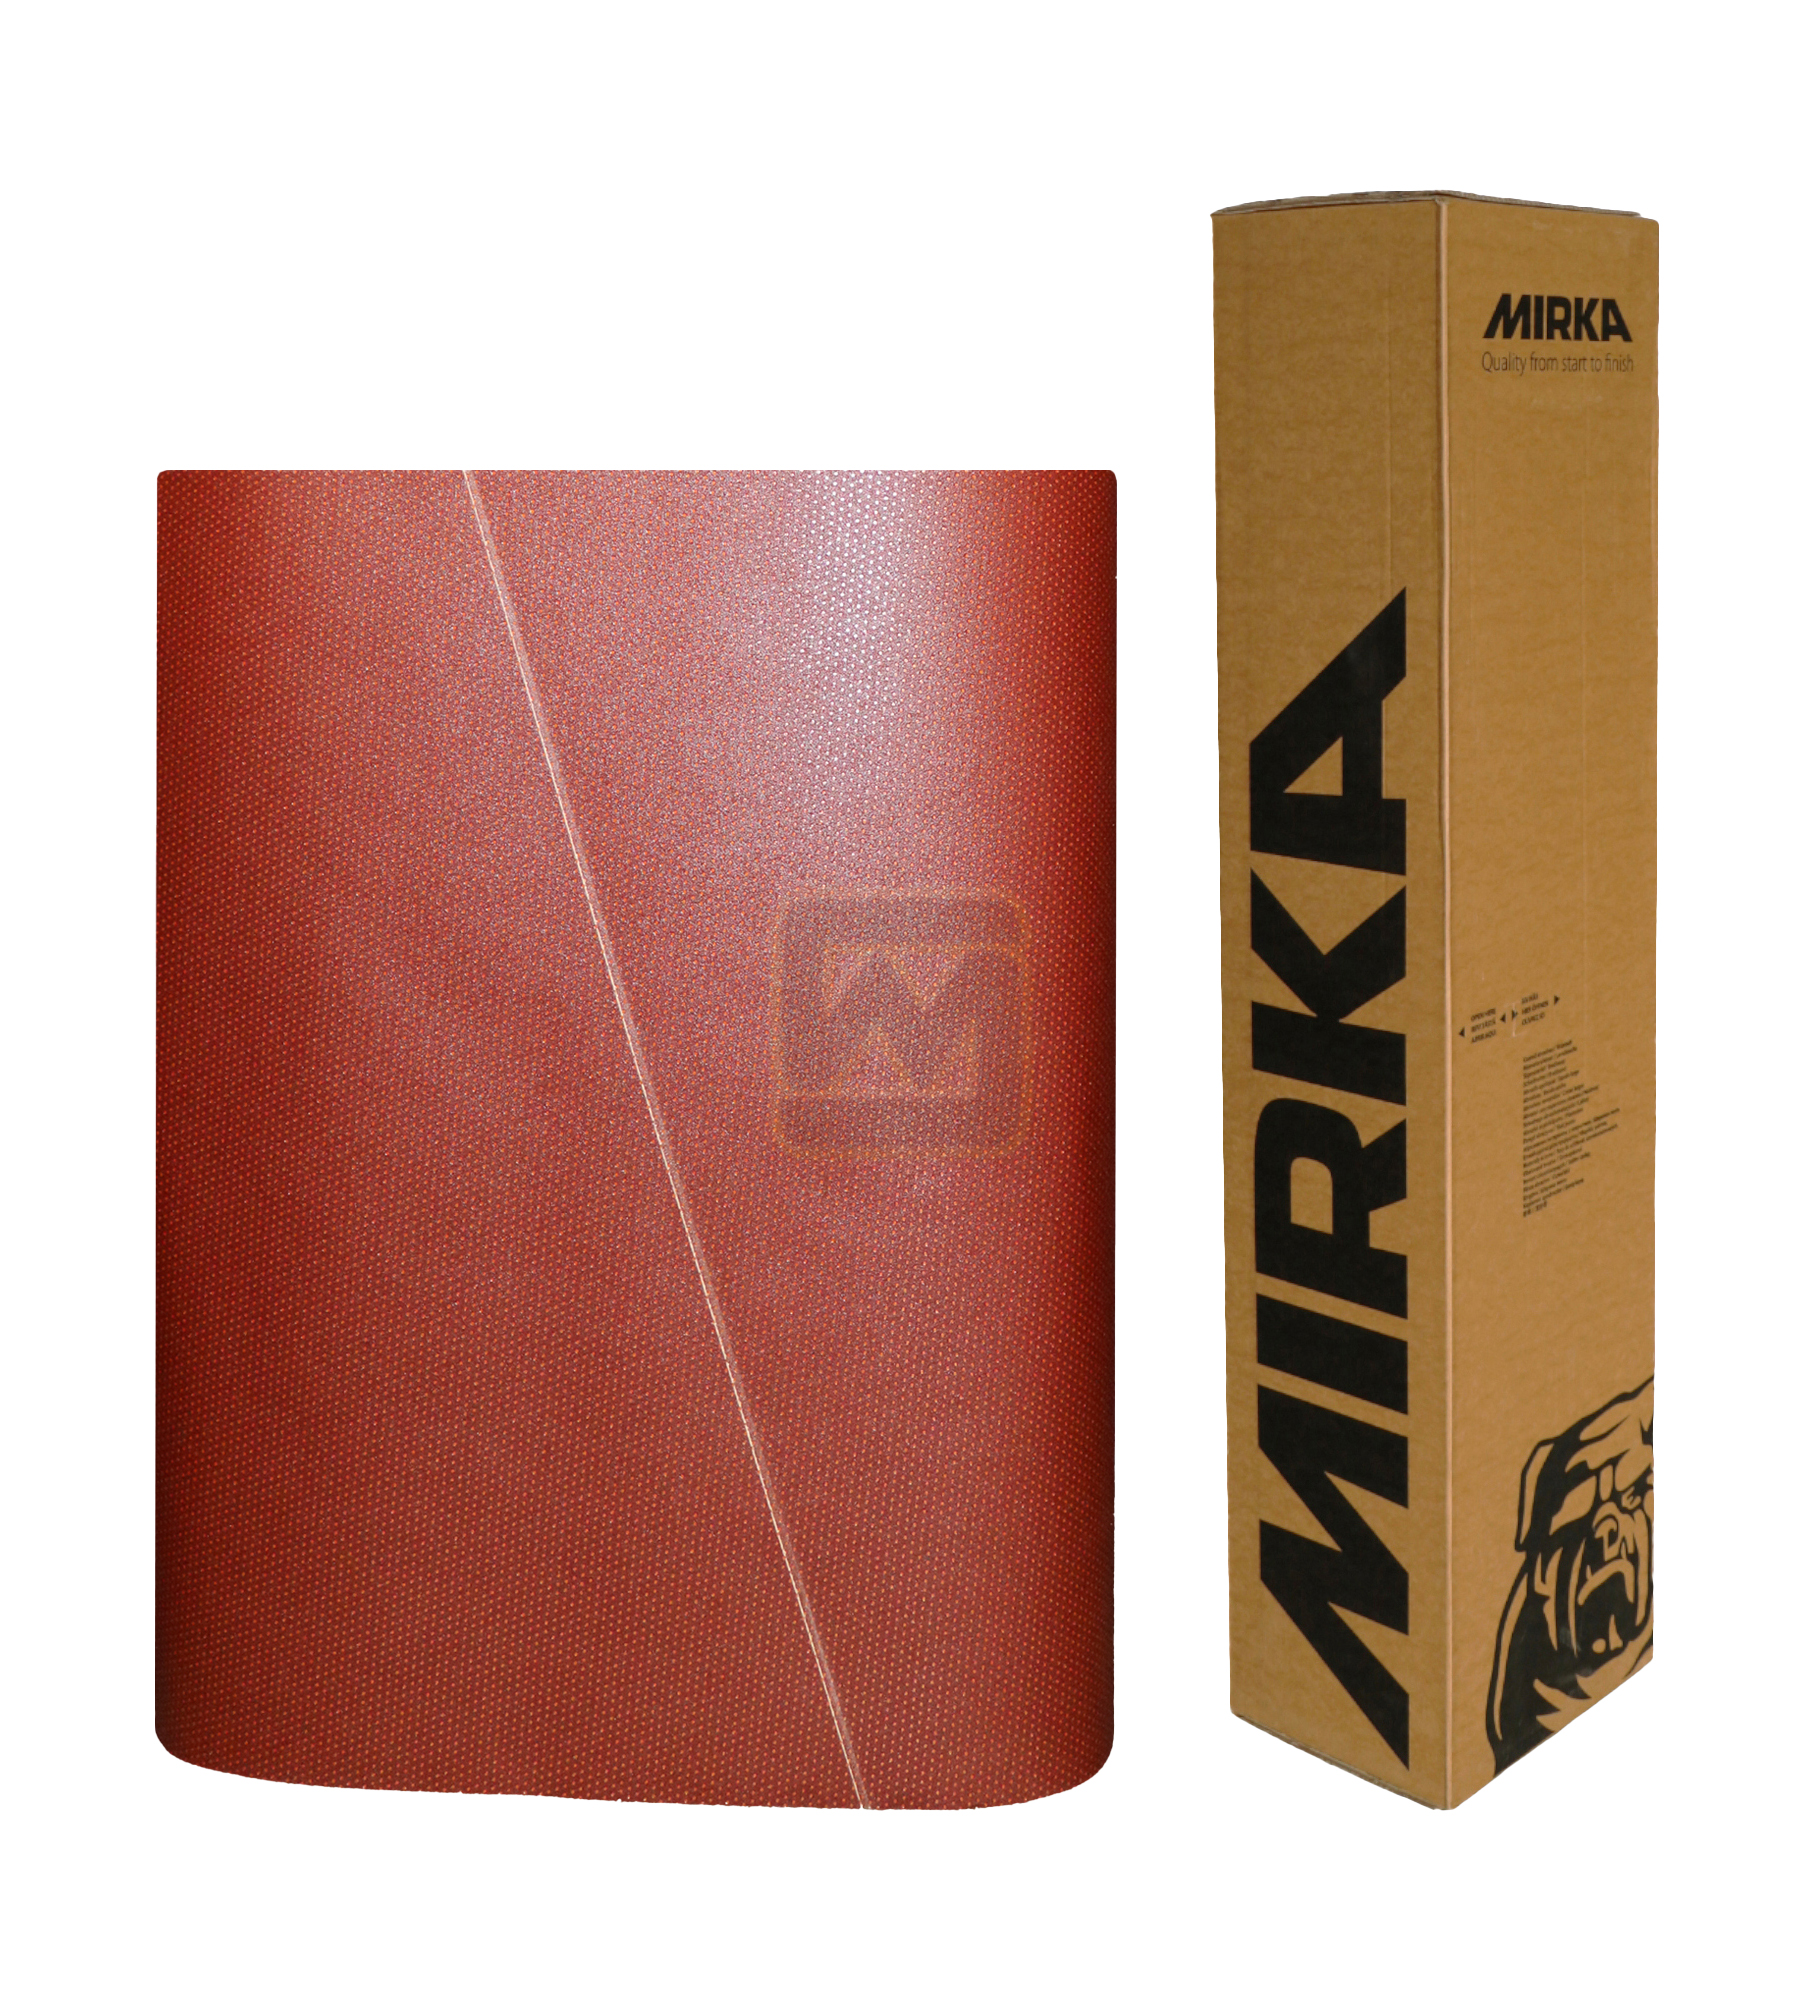 Abbildung Mirka Ultimax 1350x1900mm Breitband mit Verpackung.